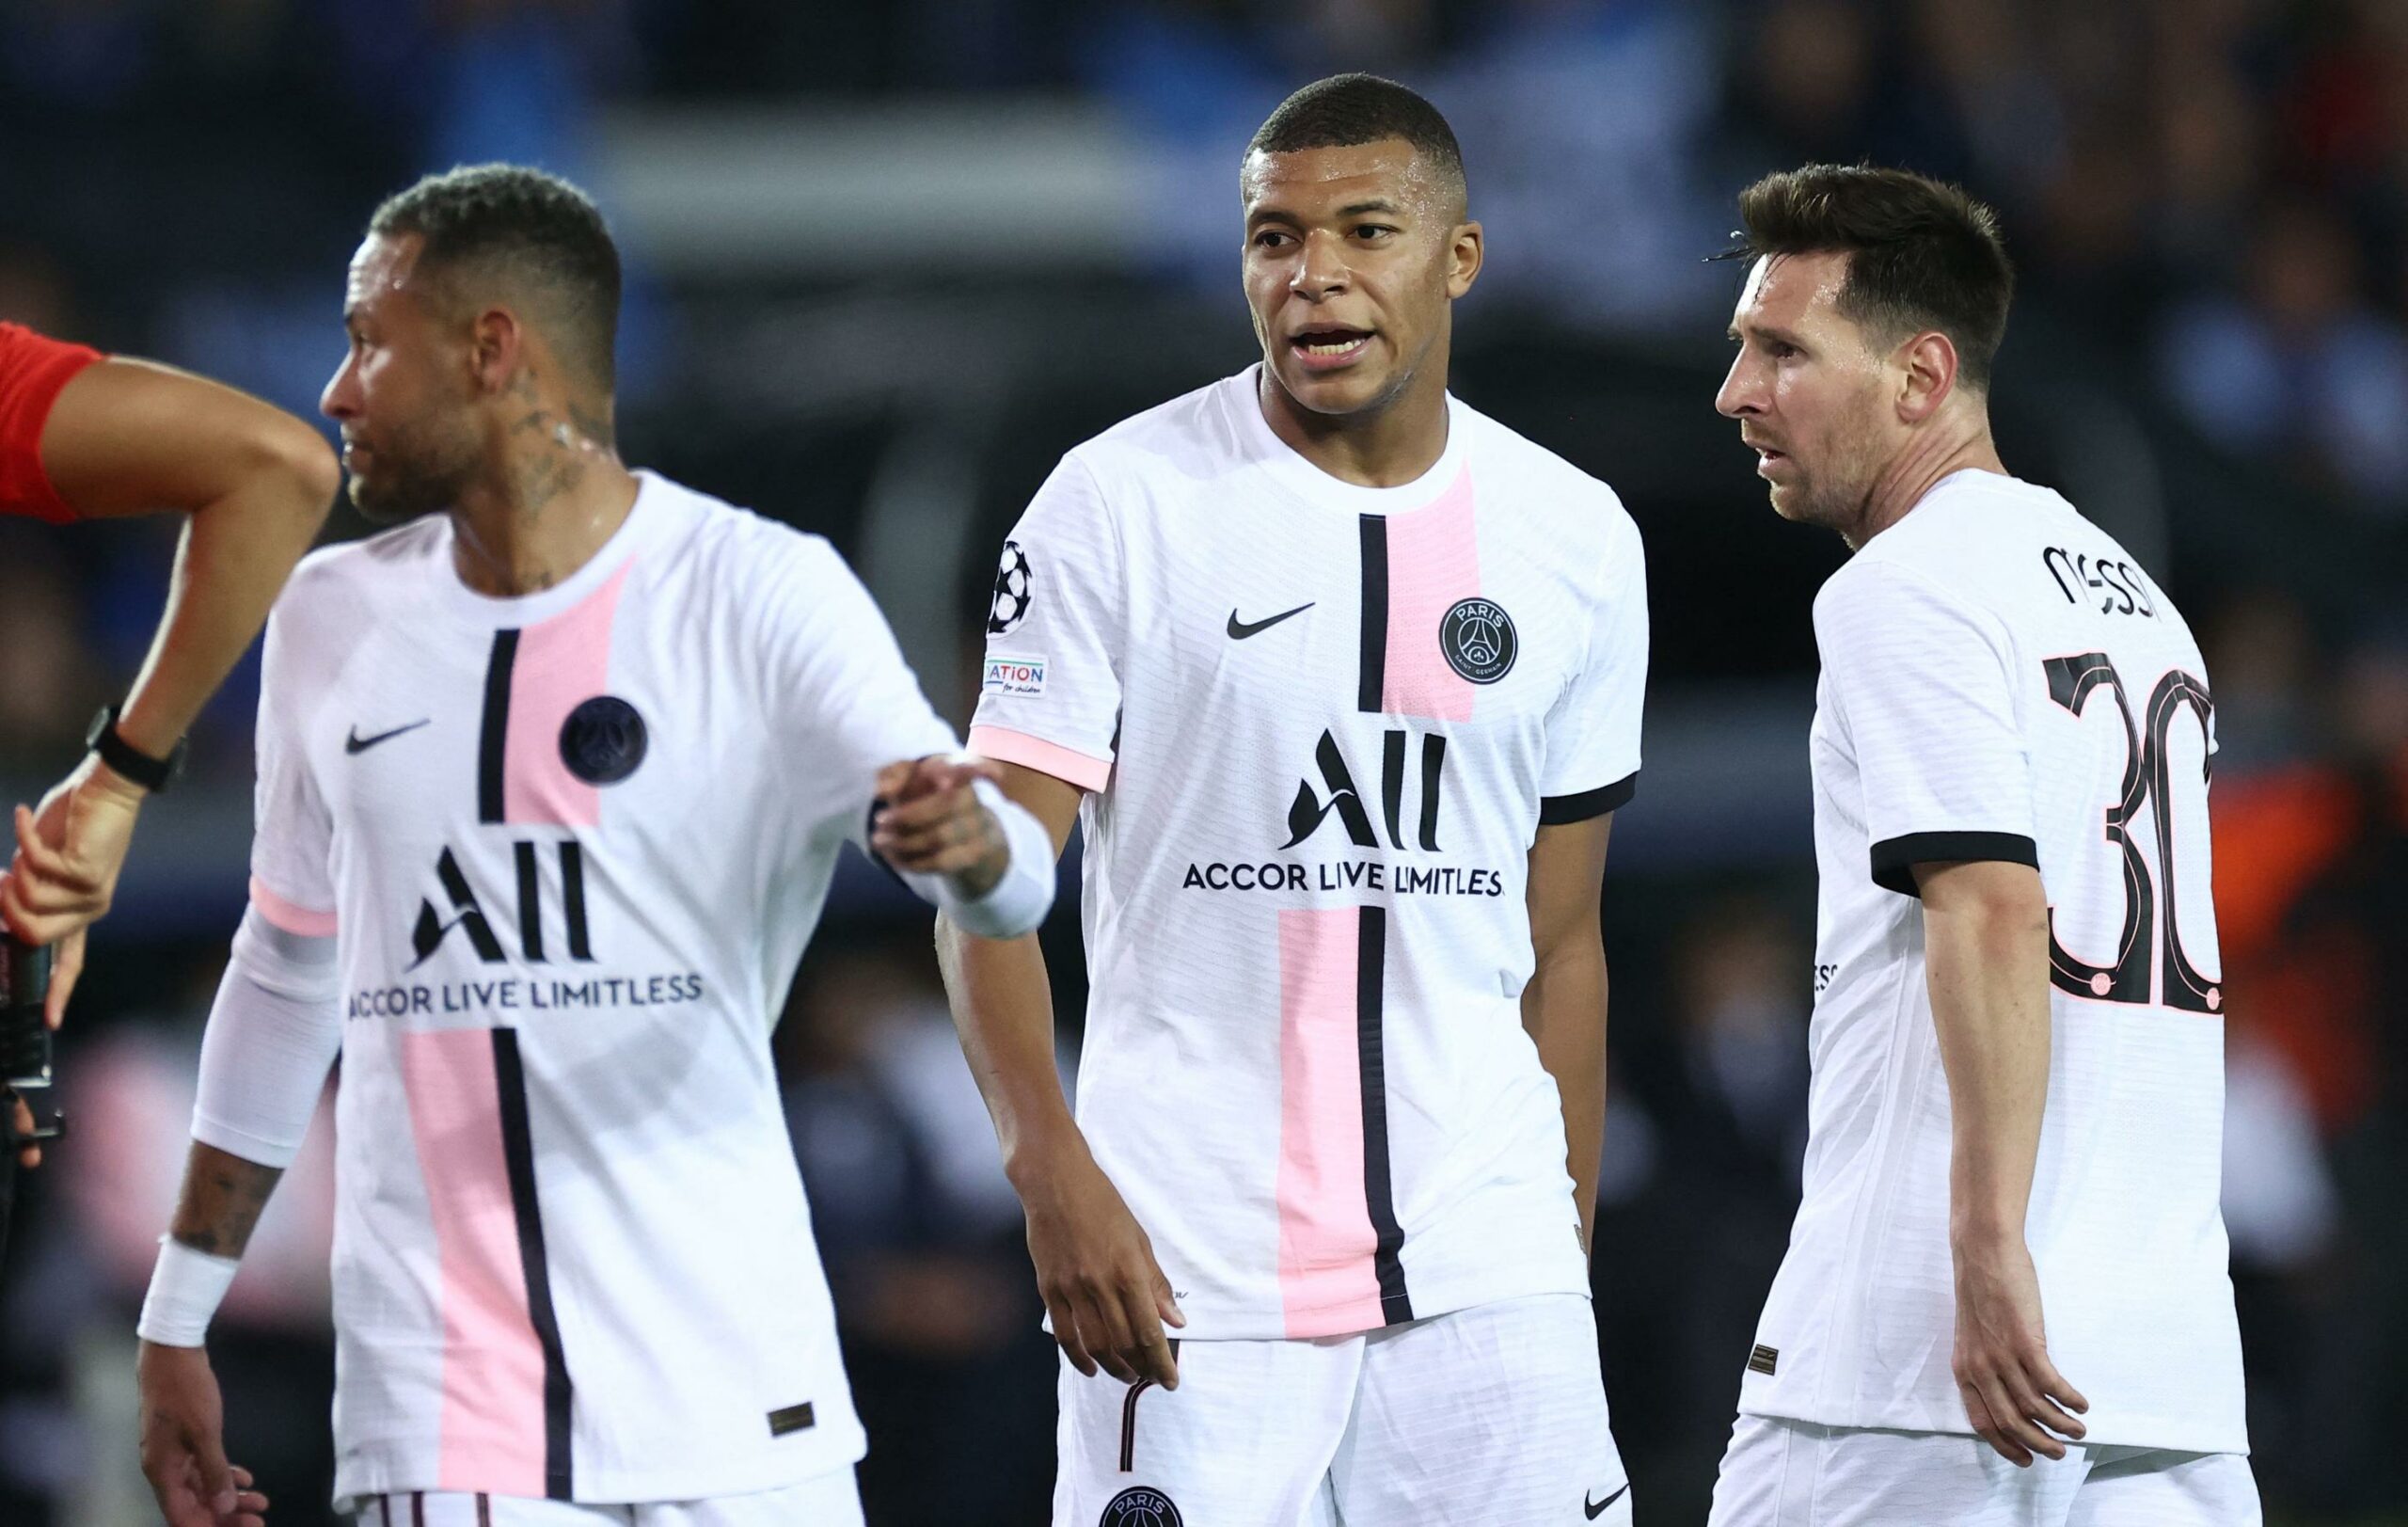 Le trio Messi, Neymar Mbappé titulaire, les compos de Toulouse vs PSG